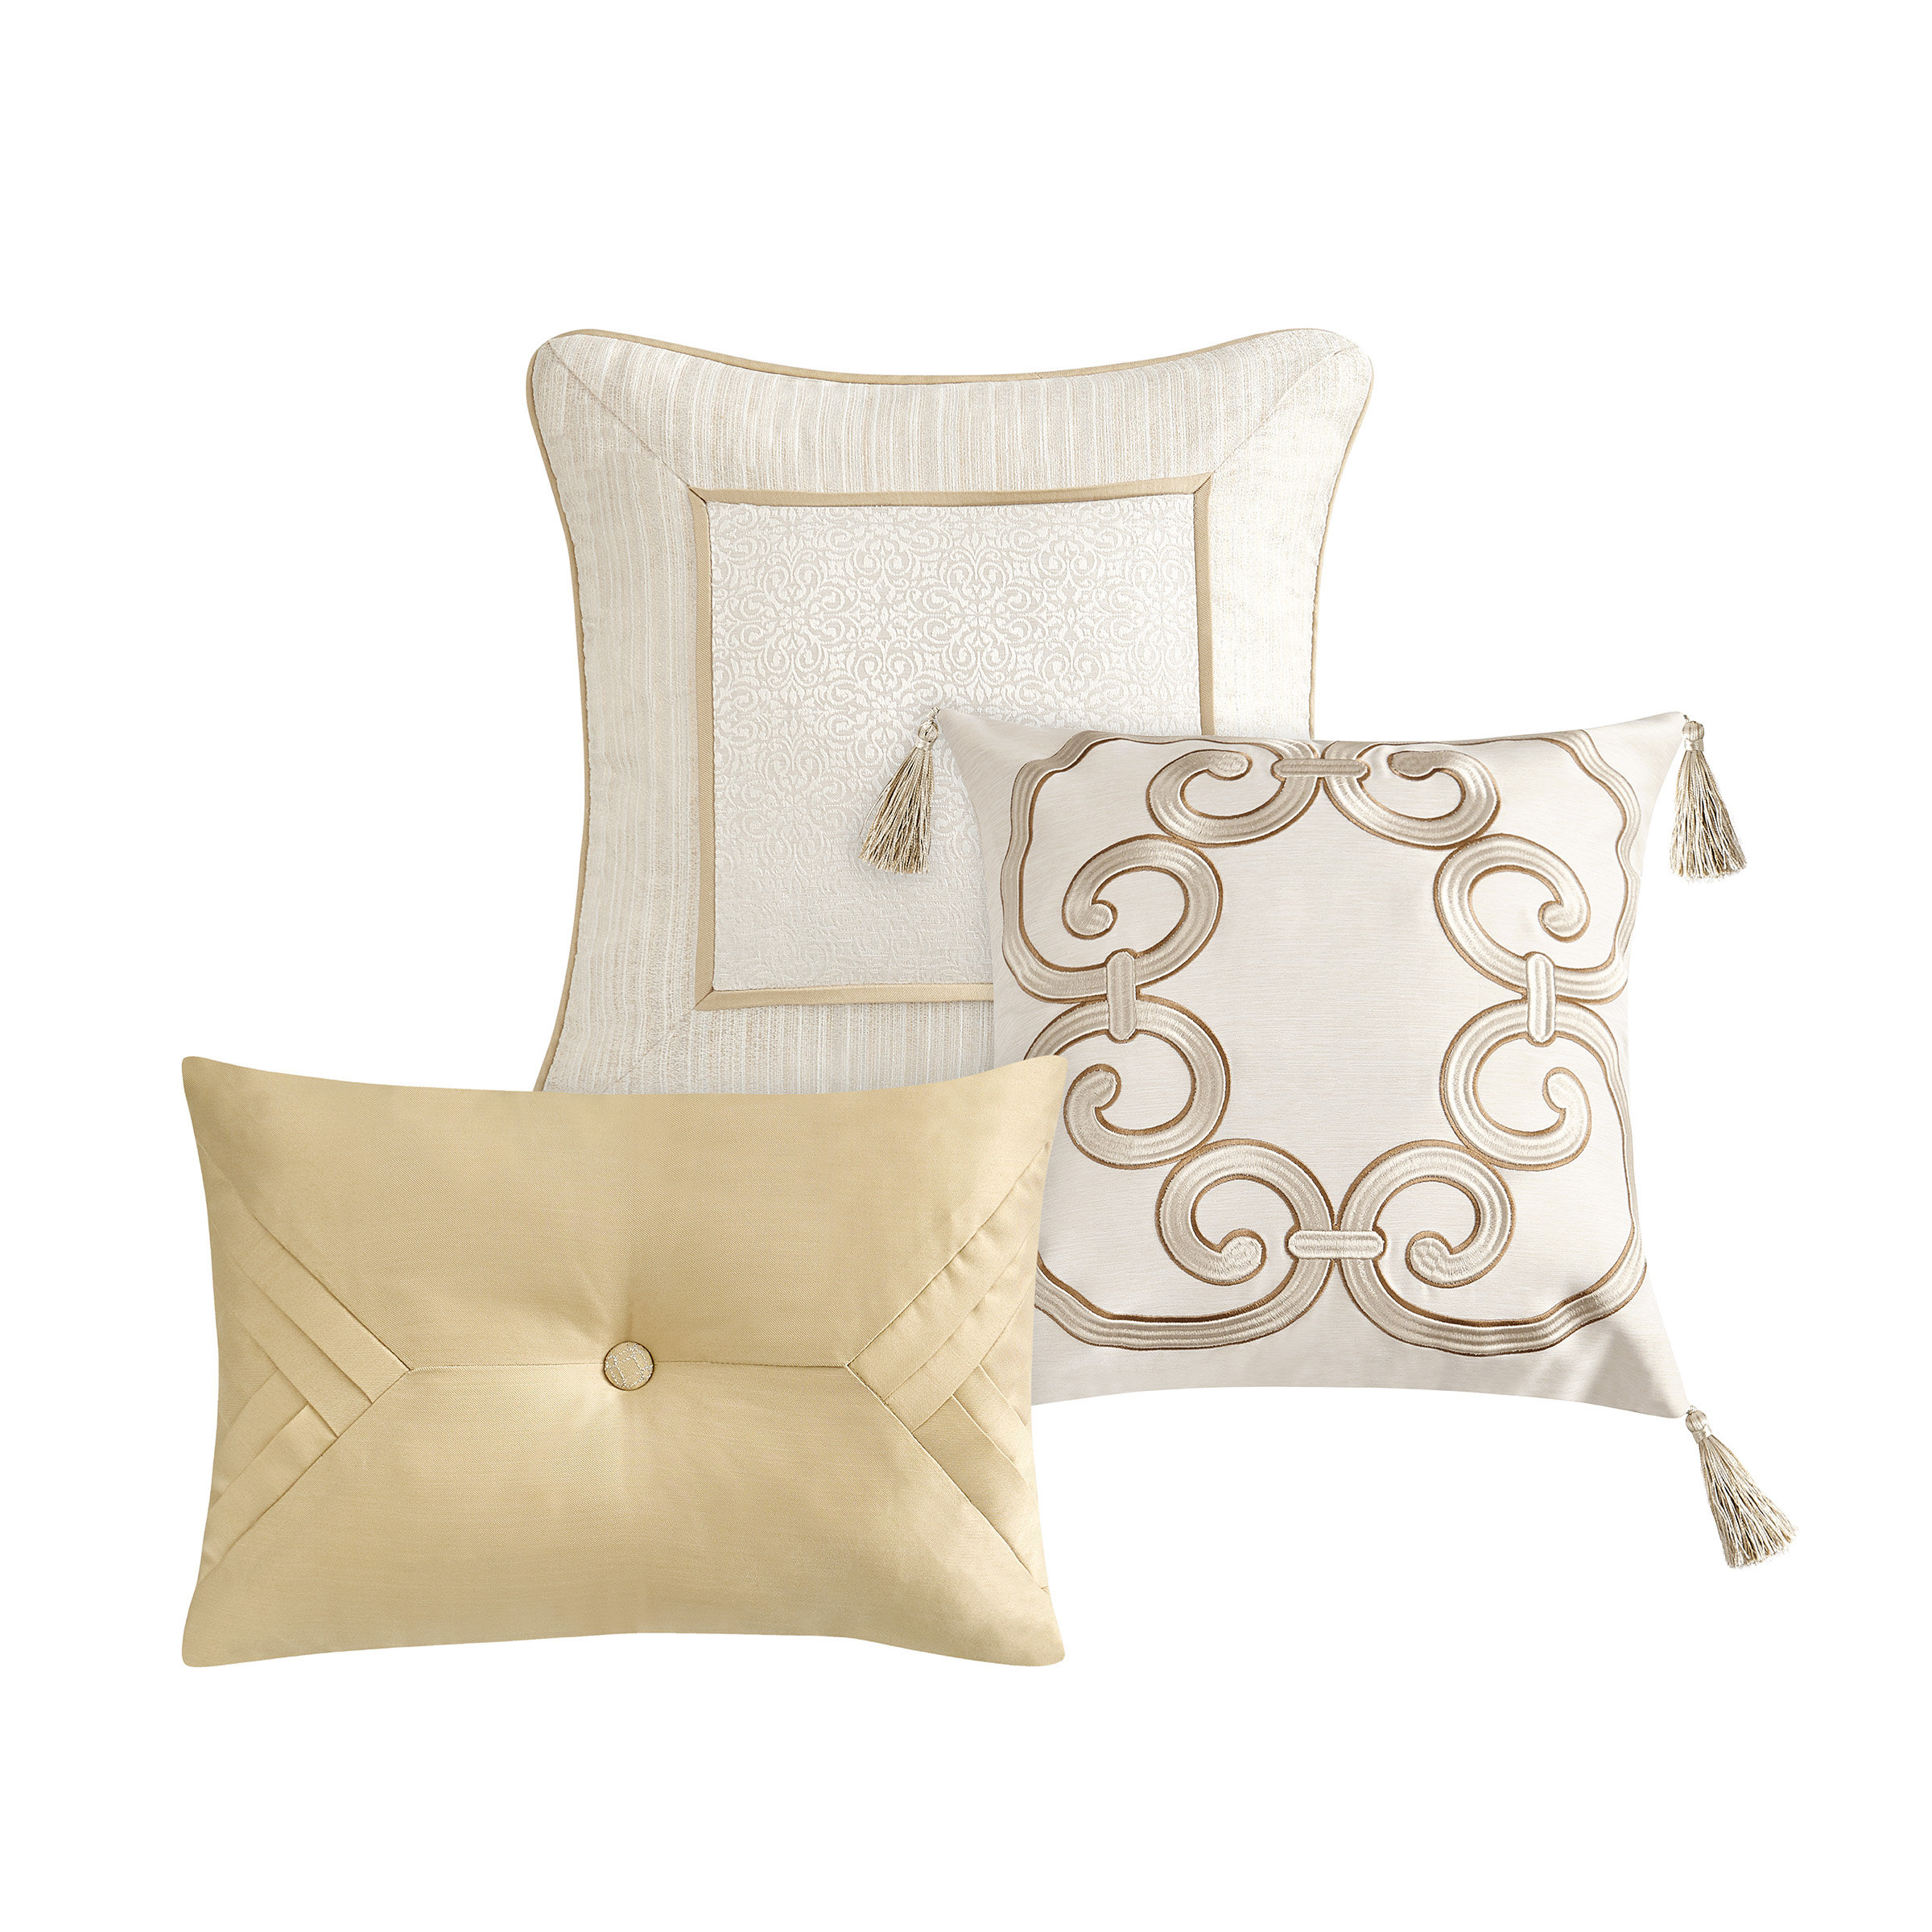 https://assets.wfcdn.com/im/61068070/compr-r85/2292/229223334/valetta-3-piece-set-decorative-throw-pillows.jpg